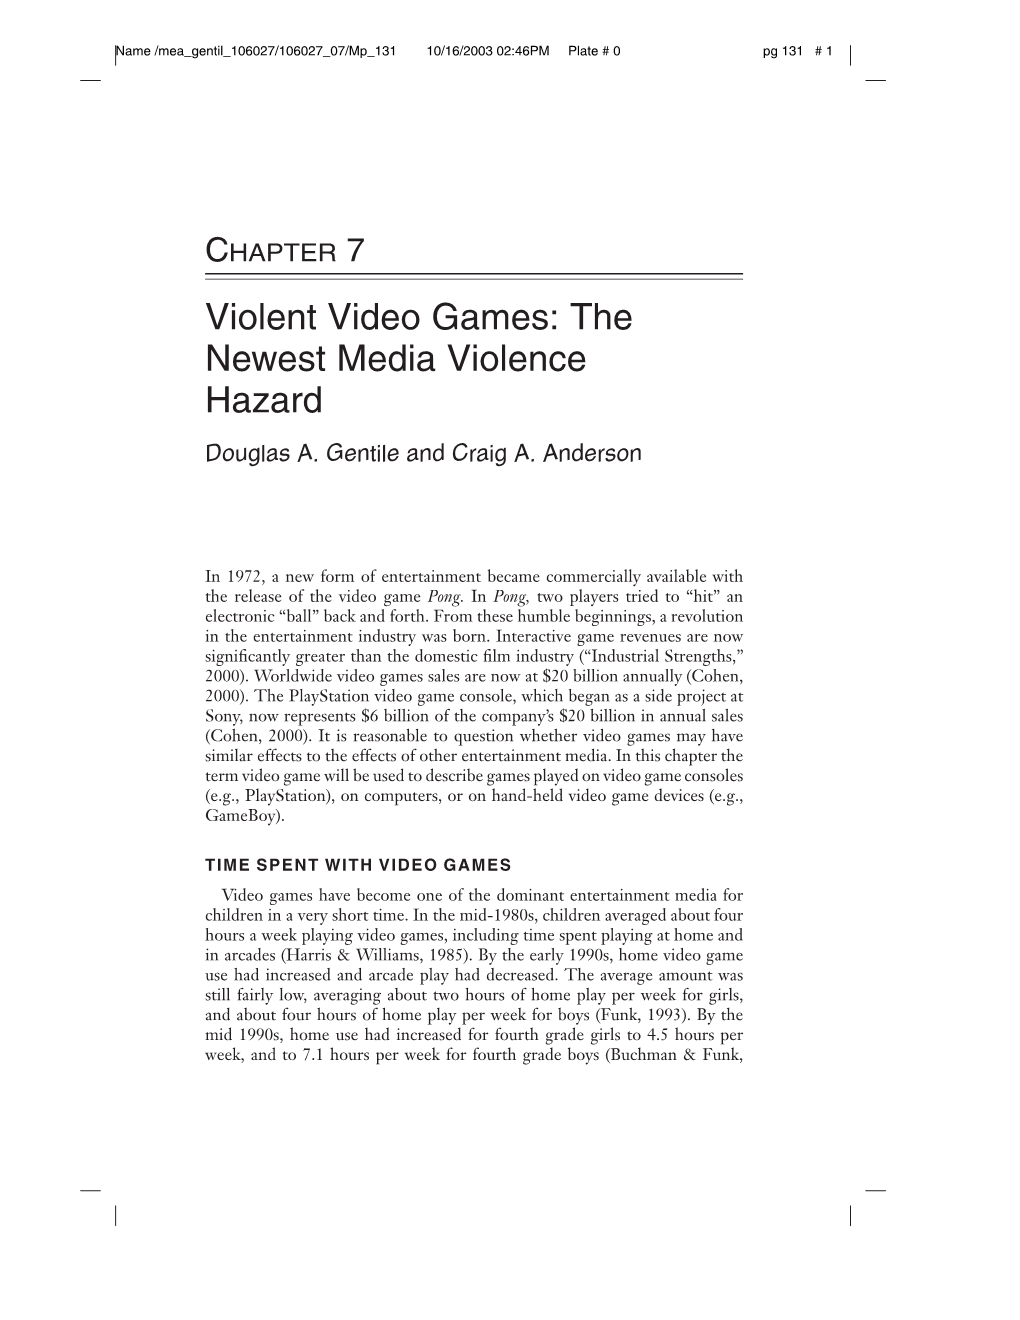 Violent Video Games: the Newest Media Violence Hazard